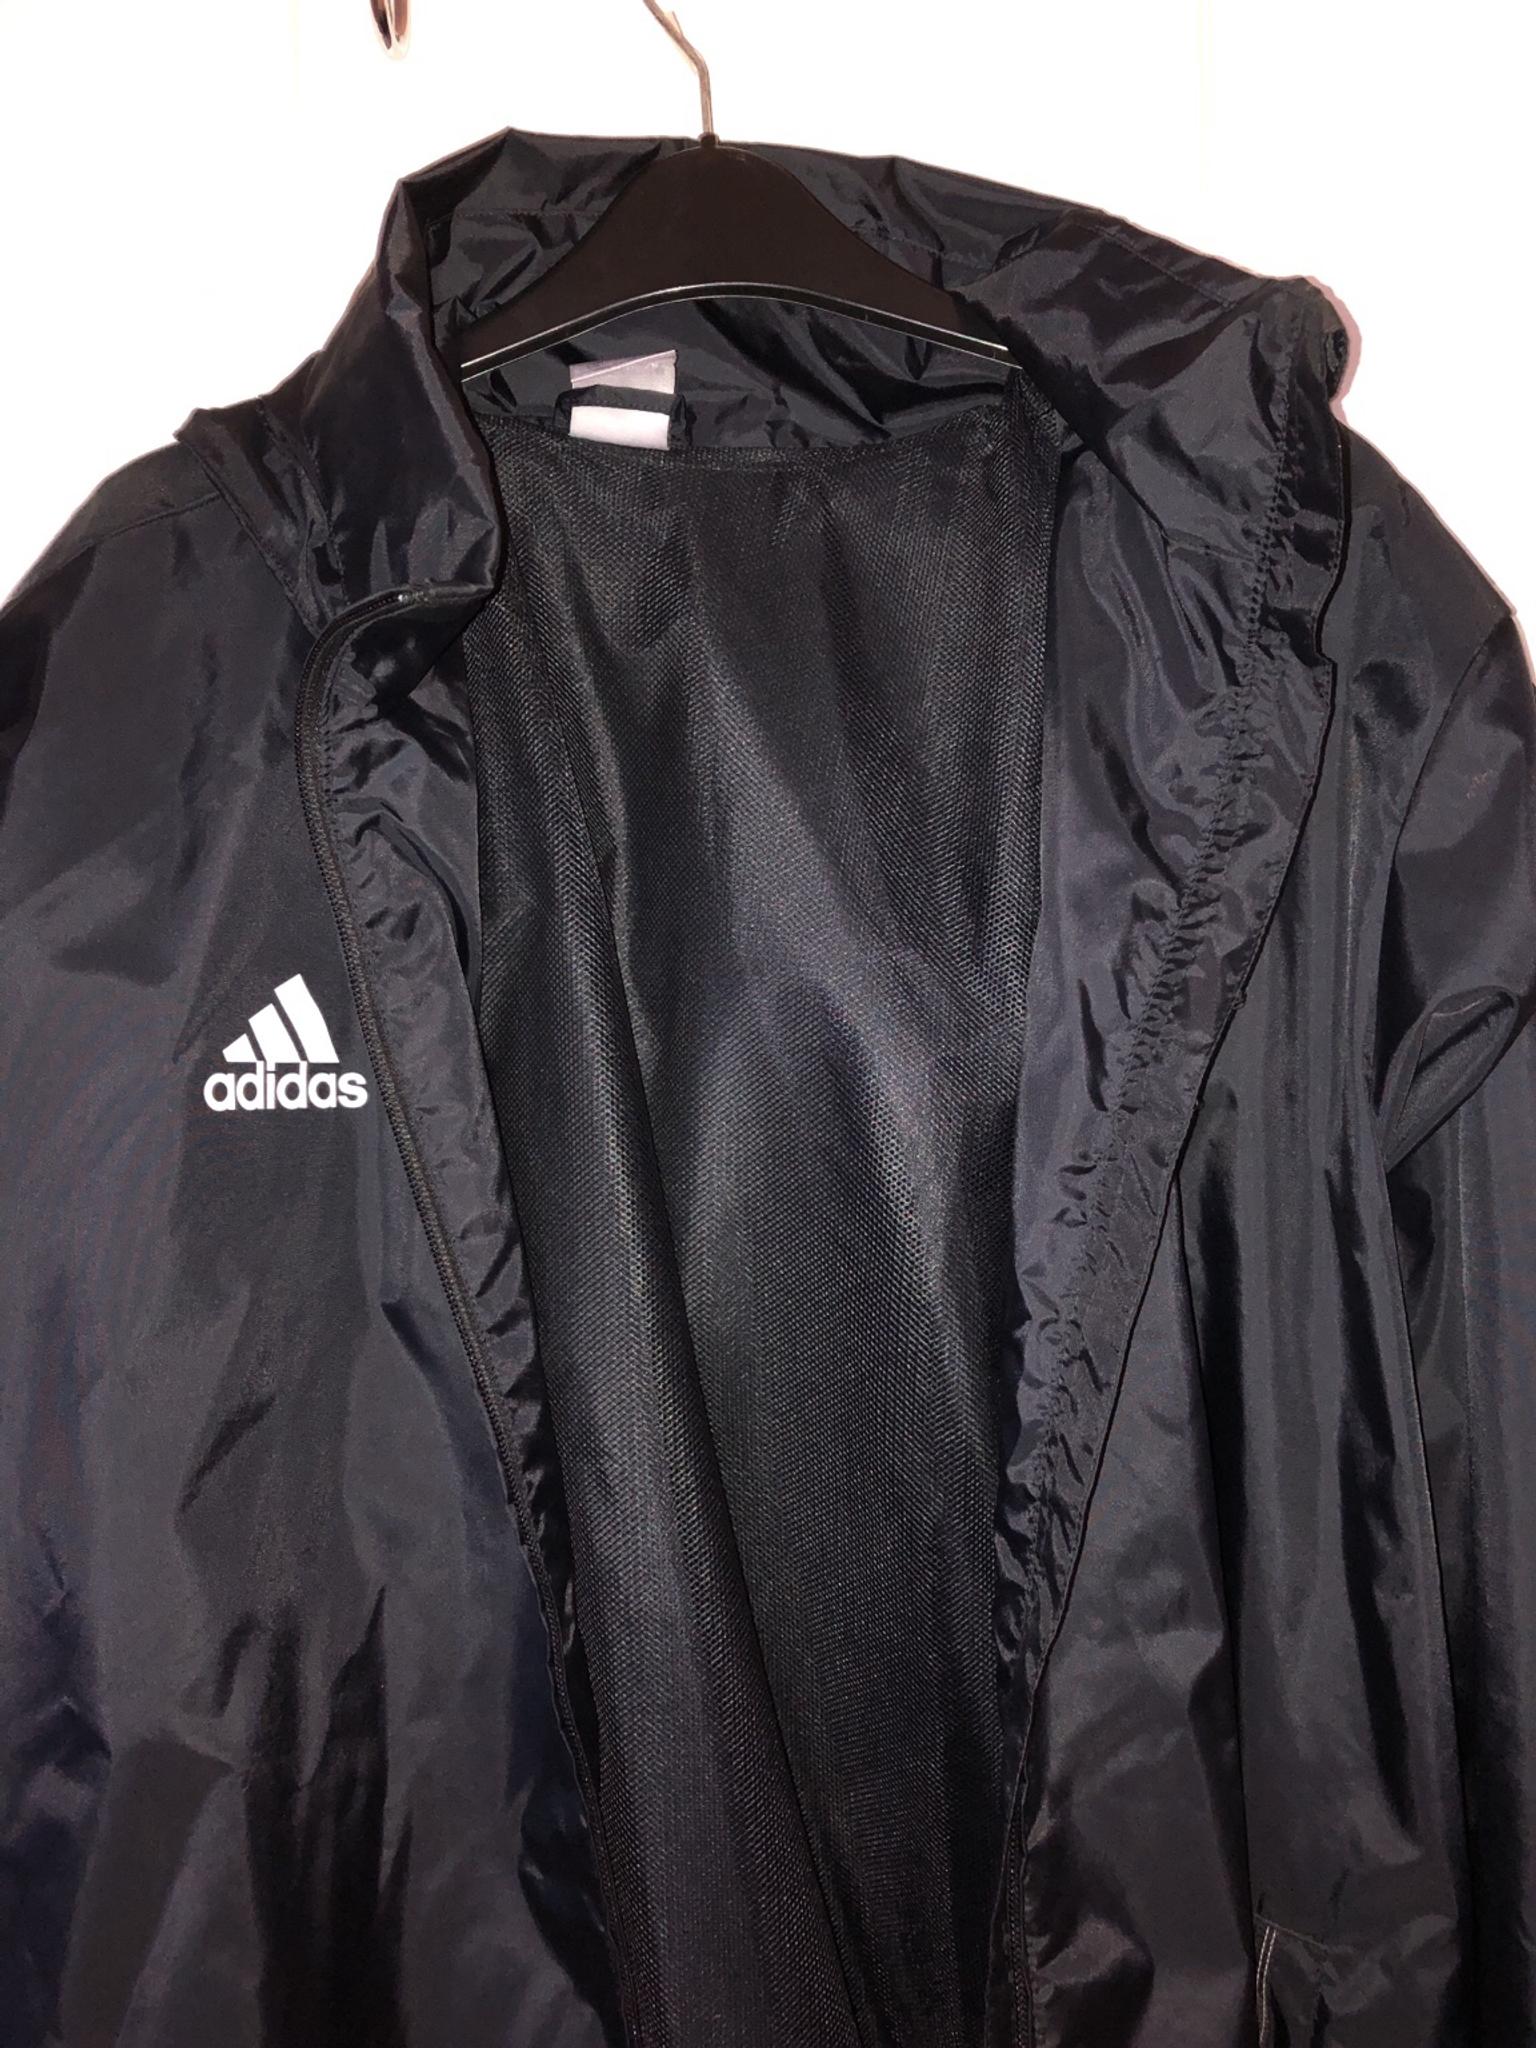 adidas rain jacket black